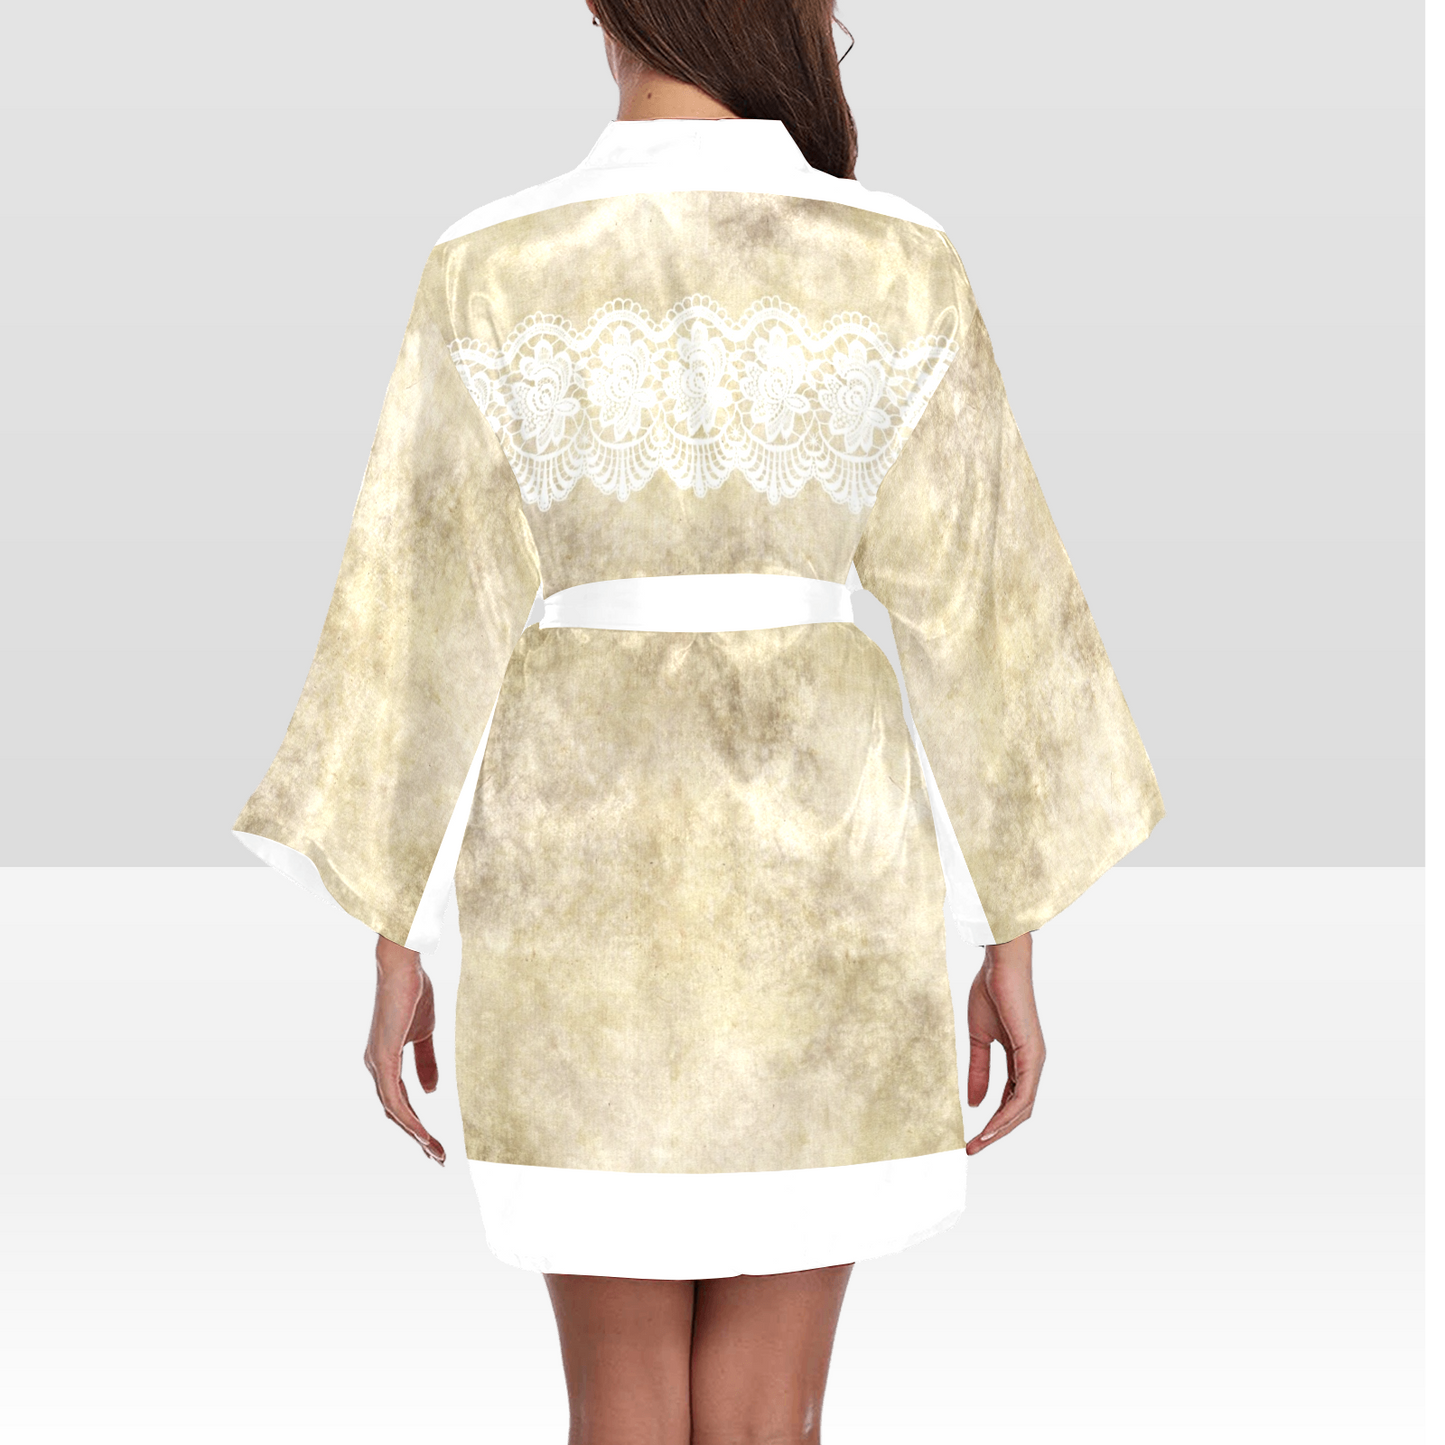 Victorian Lace Kimono Robe, Black or White Trim, Sizes XS to 2XL, Design 28